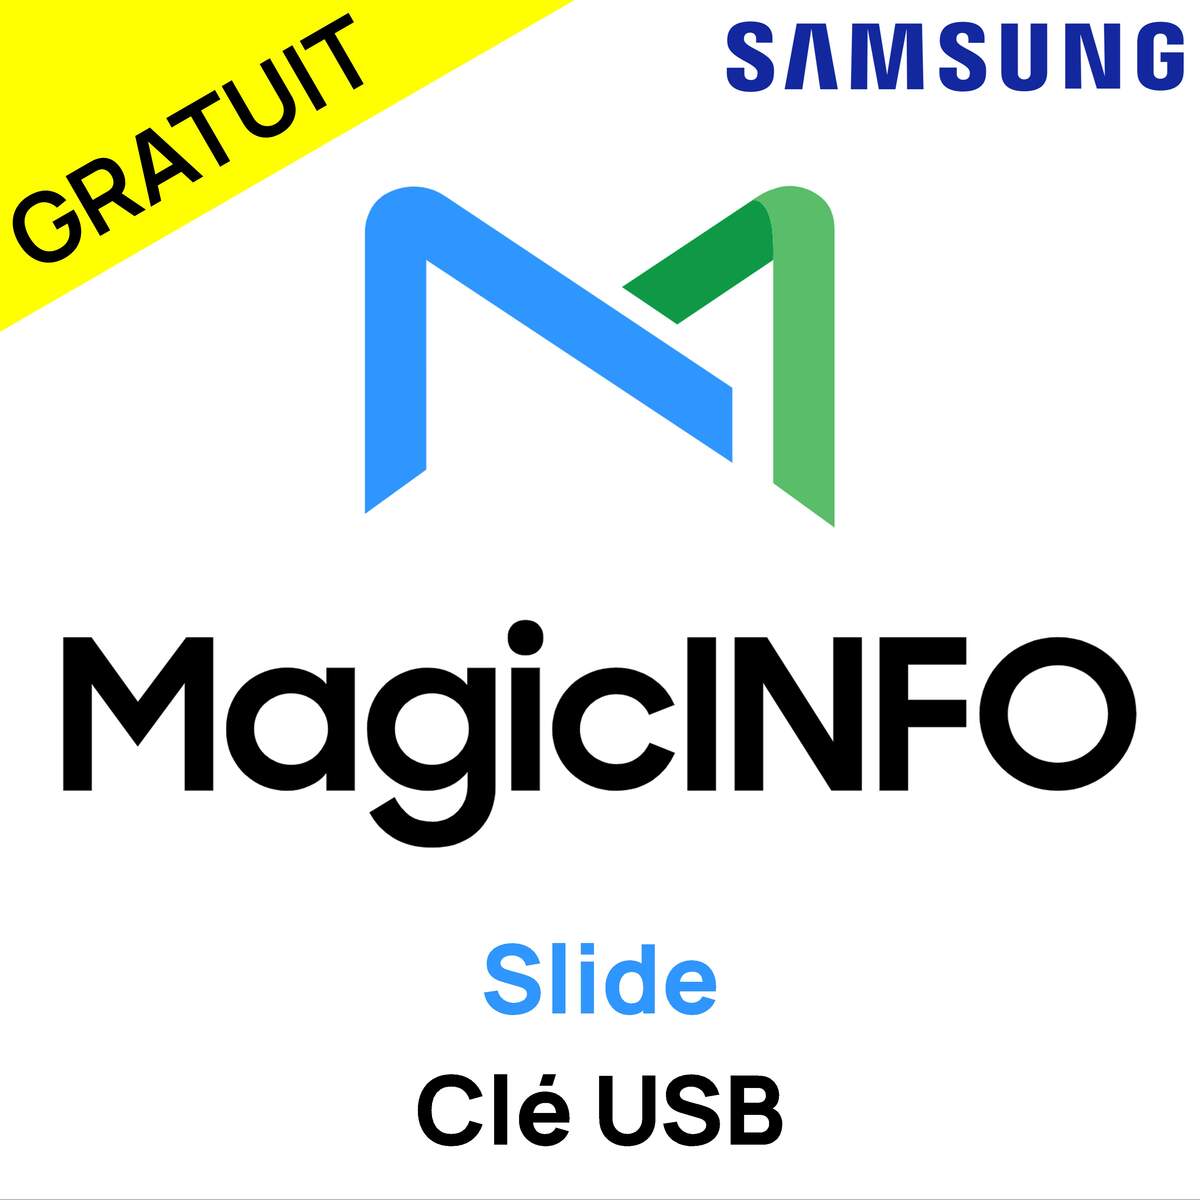 Samsung MagicInfo SLIDE image